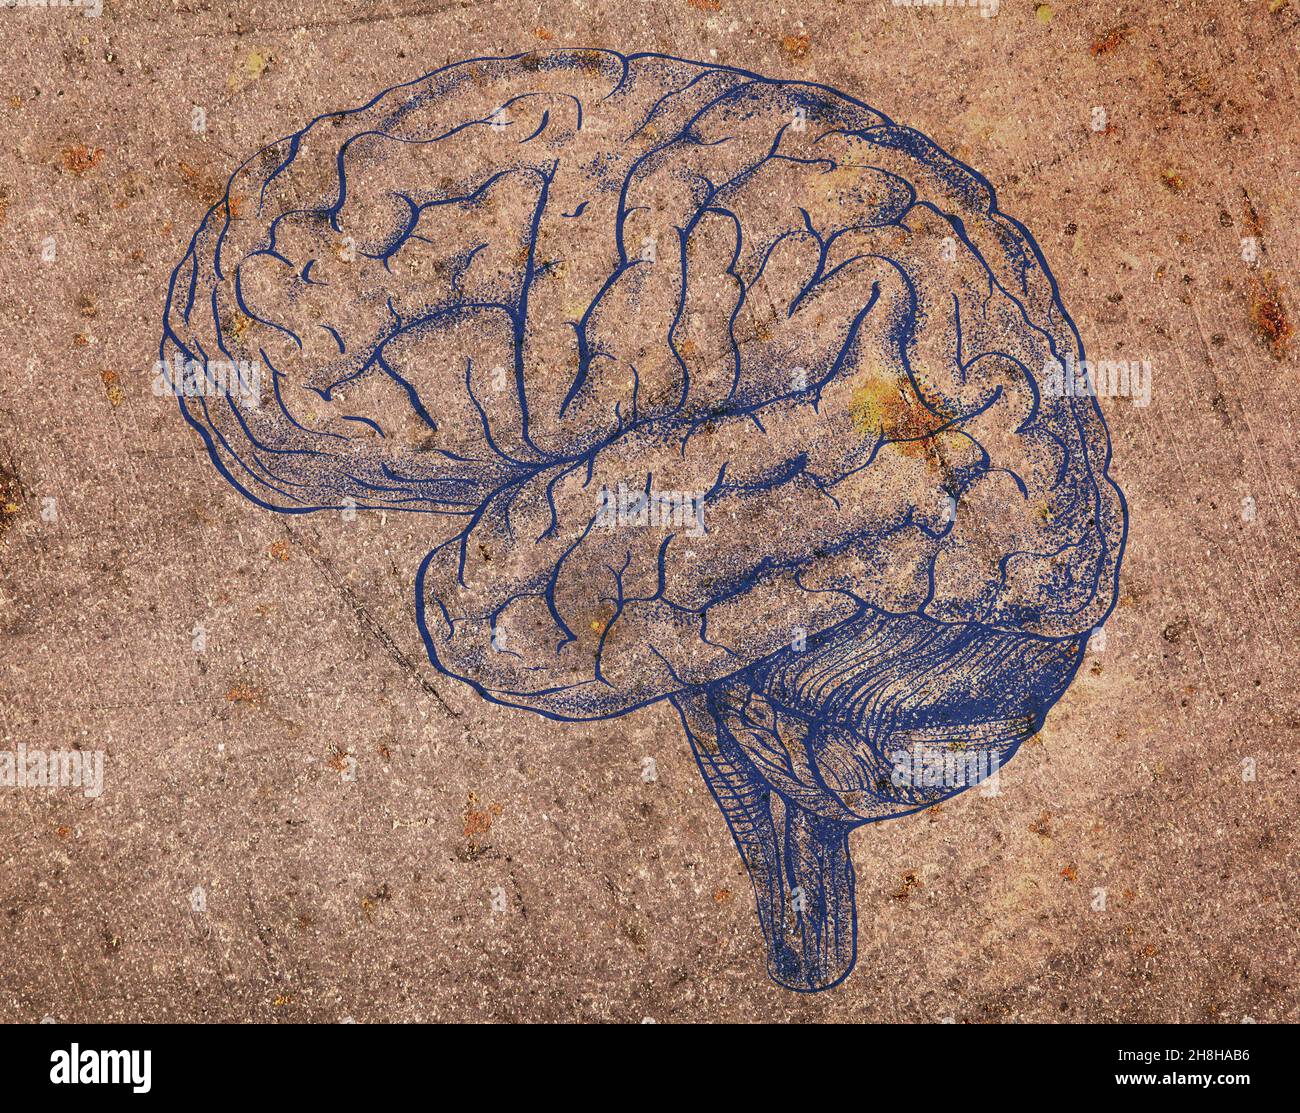 Immagine cerebrale umana sulla struttura metallica obsoleta. Foto Stock